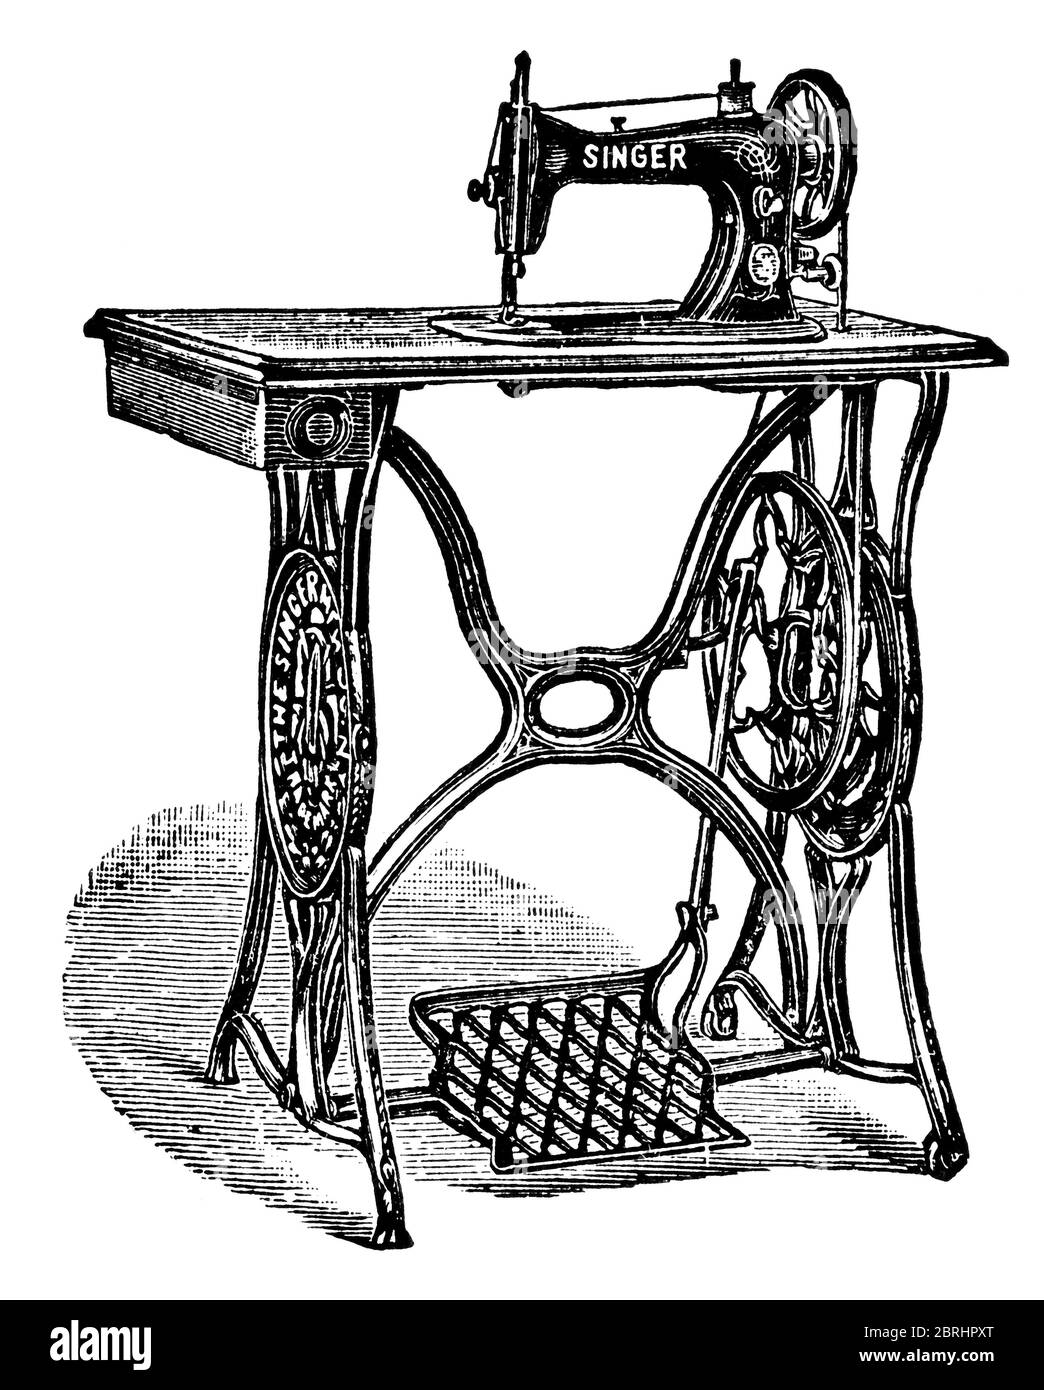 Nouveau modèle familial de machine à coudre Singer. Illustration du XIXe  siècle. Fond blanc Photo Stock - Alamy